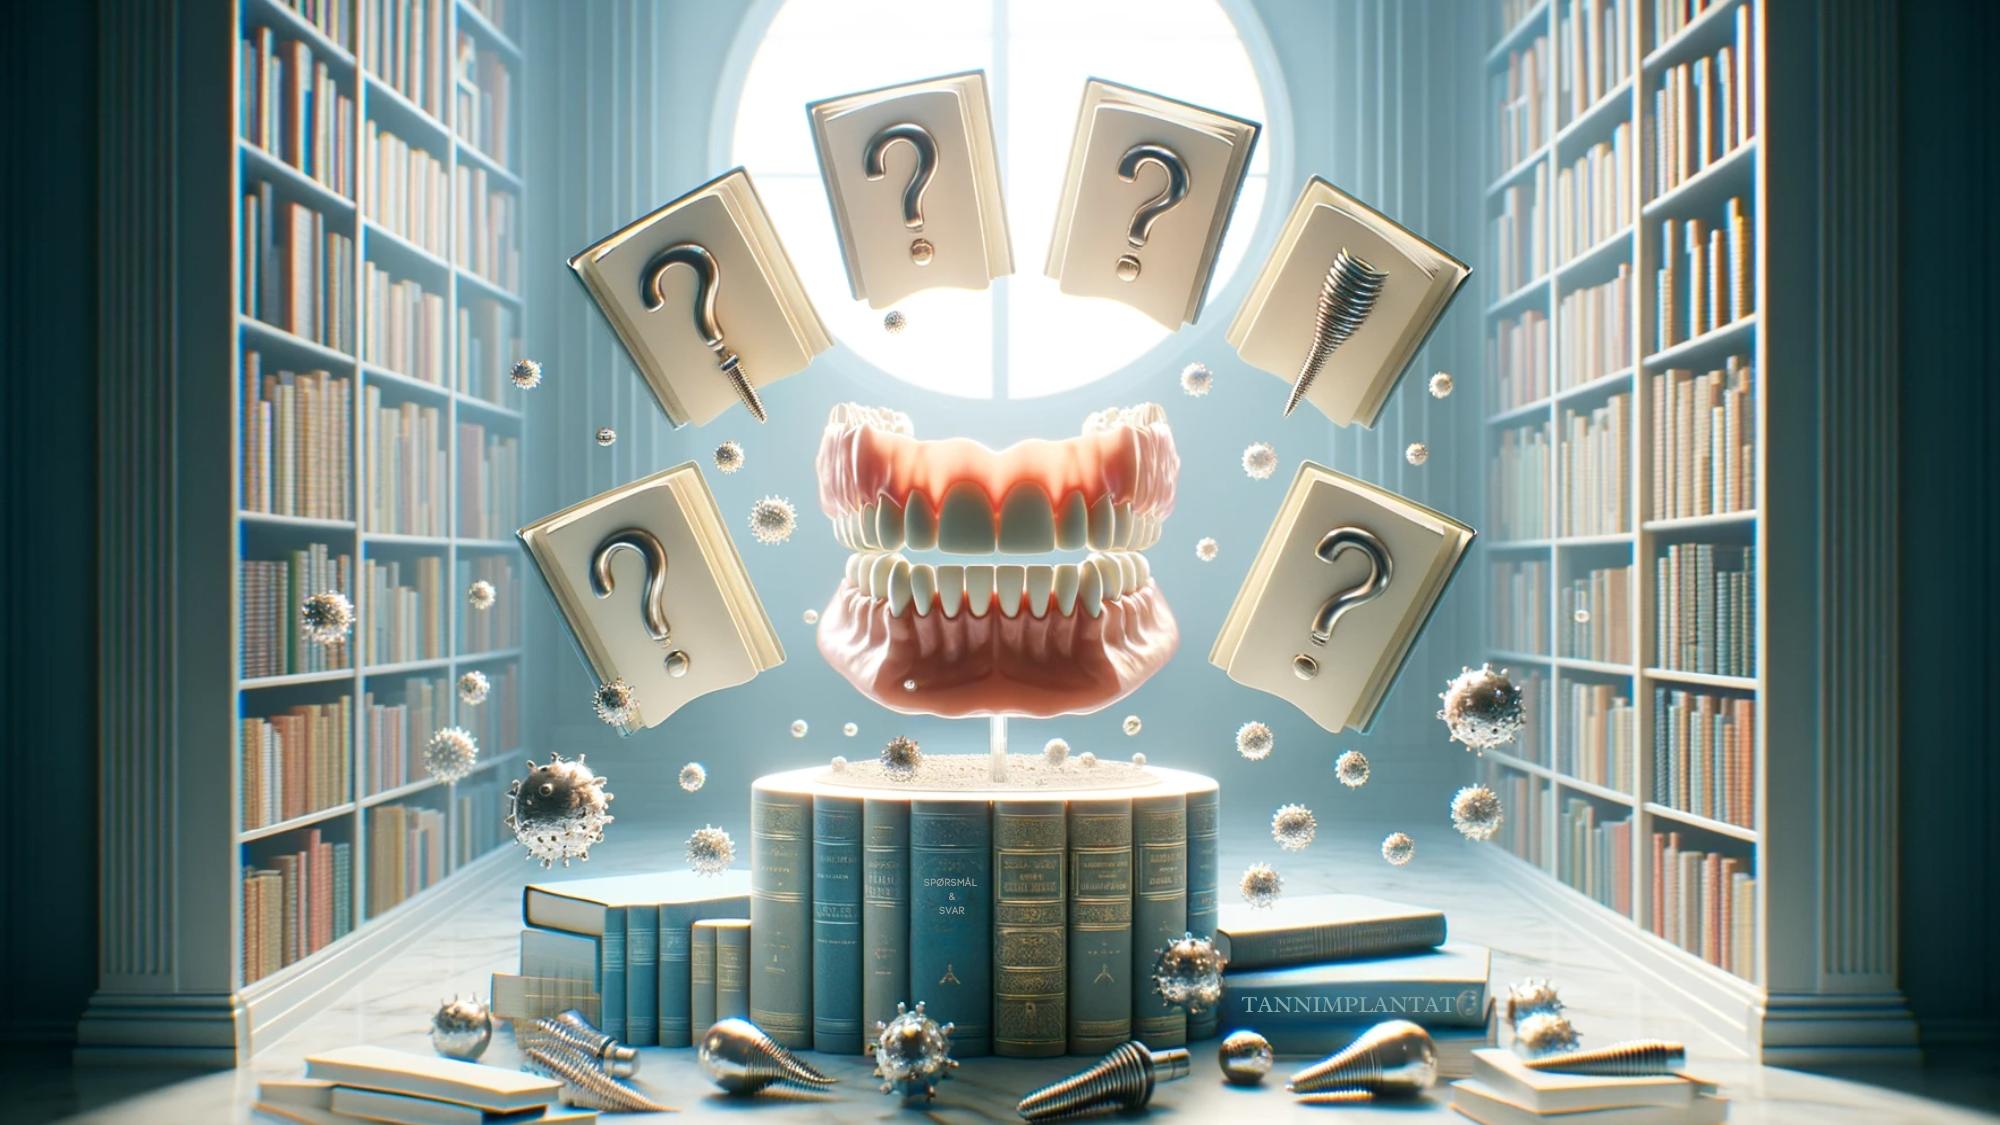 Bibliotek med svevende bøker og tannimplantatmodell, symboliserer læring om tannimplantater